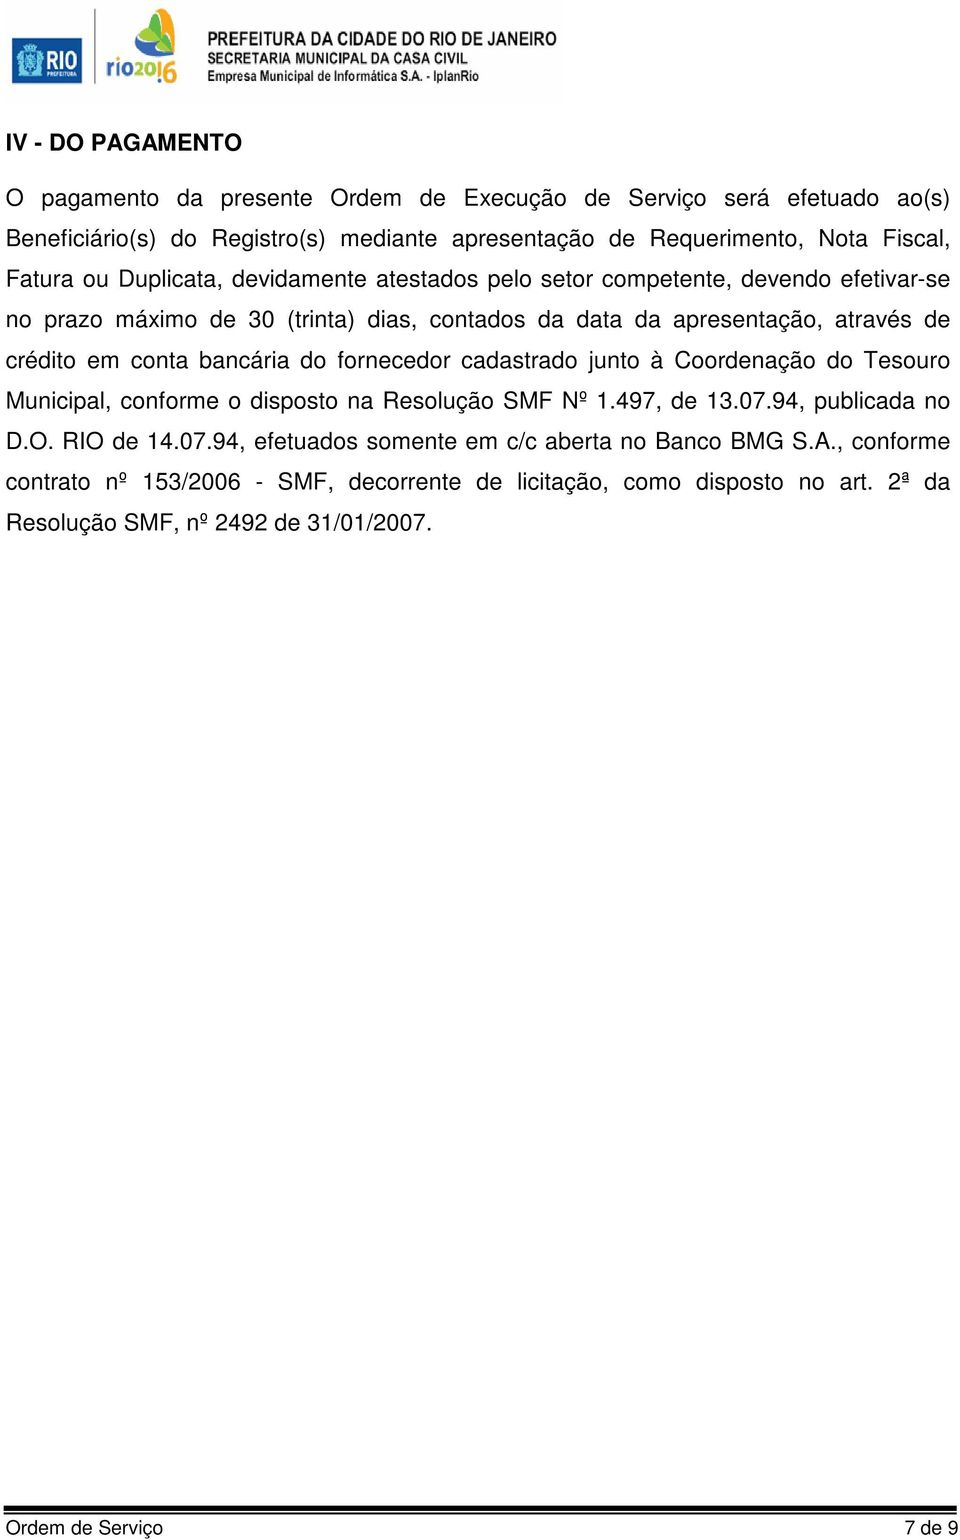 bancária do fornecedor cadastrado junto à Coordenação do Tesouro Municipal, conforme o disposto na Resolução SMF Nº 1.497, de 13.07.94, publicada no D.O. RIO de 14.07.94, efetuados somente em c/c aberta no Banco BMG S.